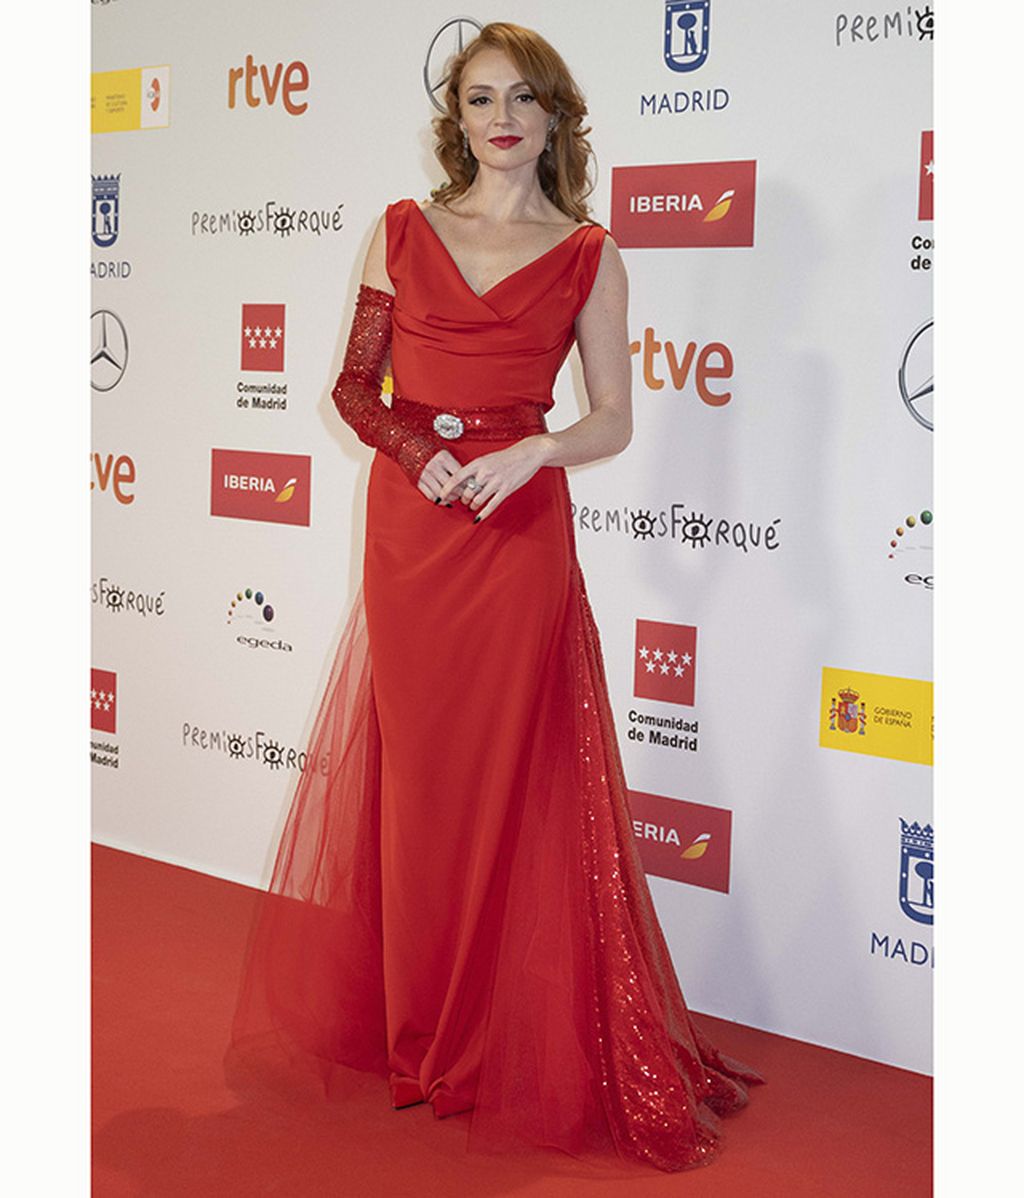 Premios Forqué: la alfombra roja foto a foto